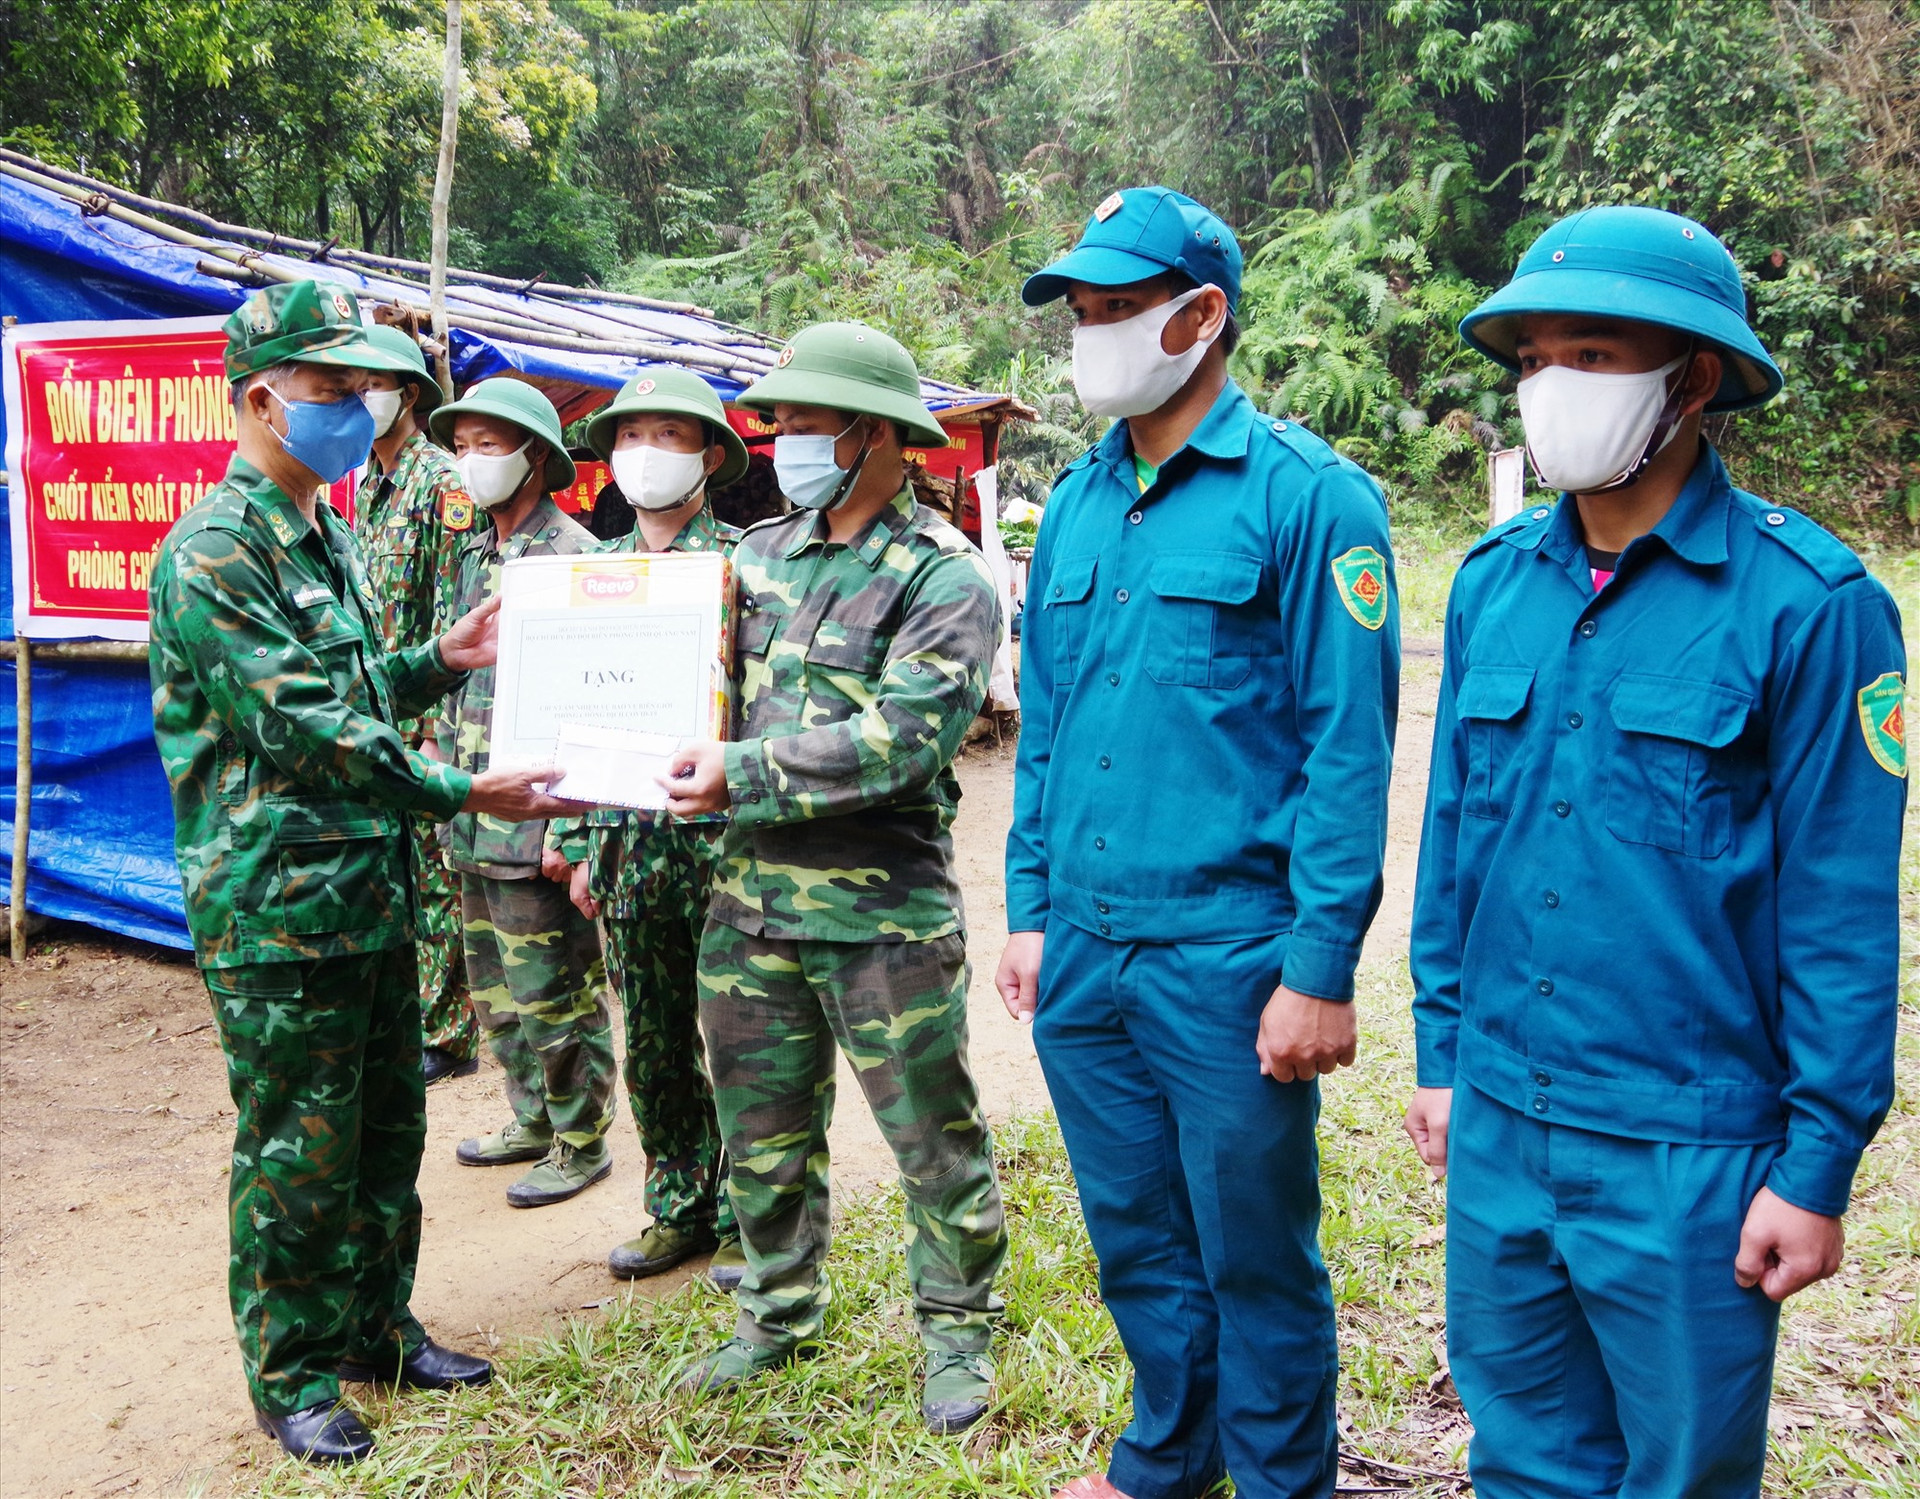 Đại tá Nguyễn Quang Nam – Phó Chỉ huy trưởng BĐBP tỉnh kiểm tra, động viên và tặng quà cho Tổ cắm chốt phòng chống dịch của Đồn Biên phòng A Nông.